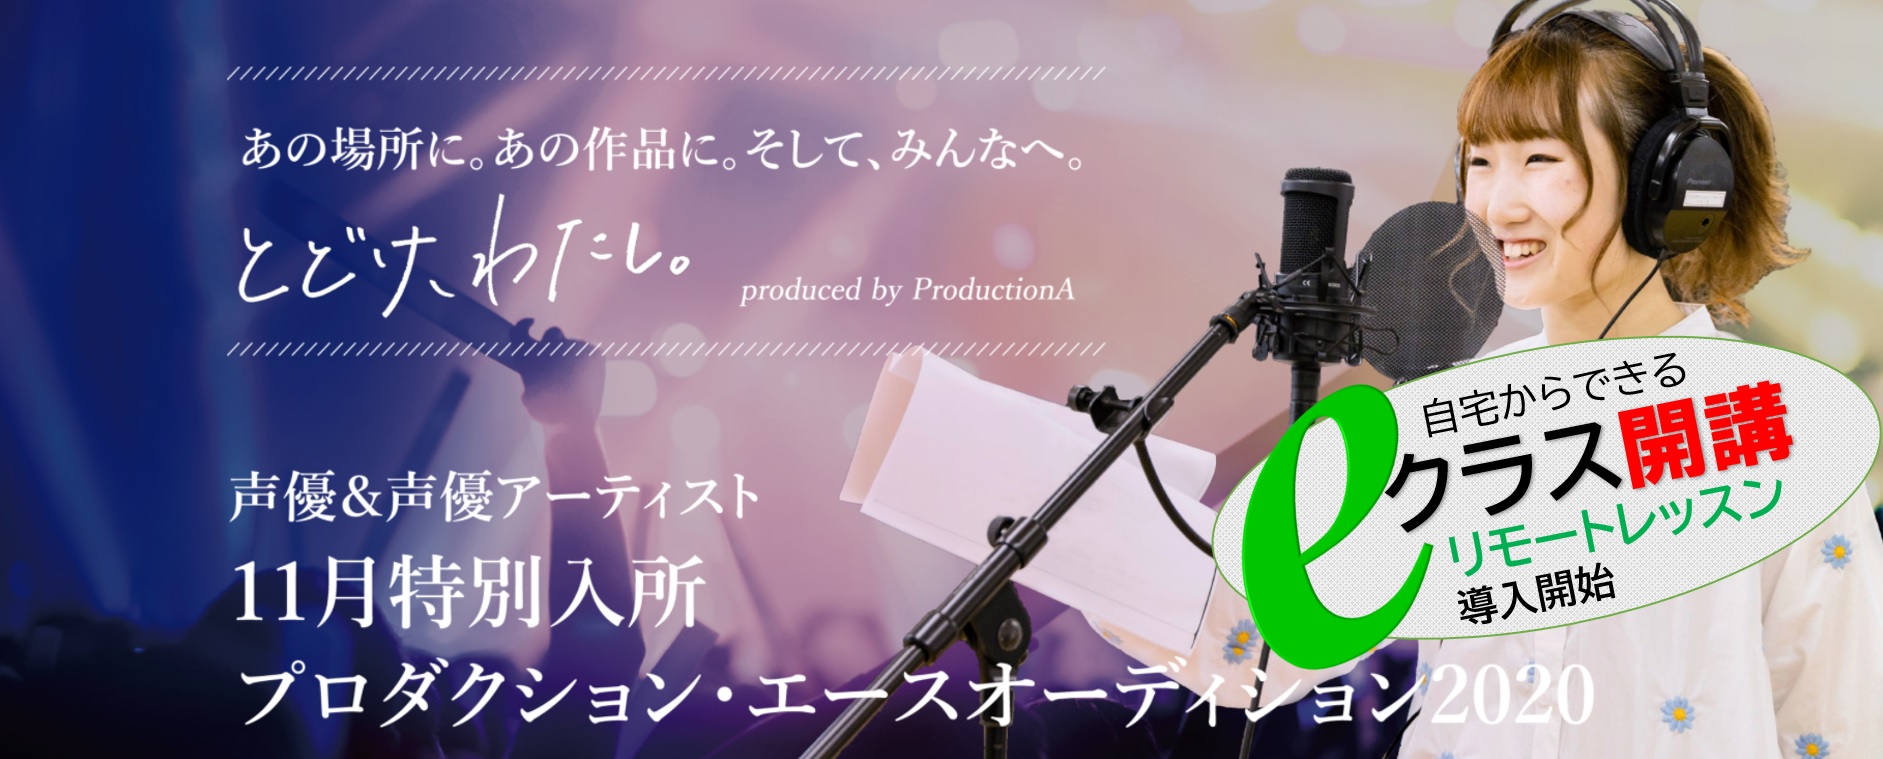 自宅から所属チャンスも Kadokawaグループの声優 養成所が オンラインレッスン クラス新設 プロダクション エース特別入所オーディション 株式会社プロダクション エースのプレスリリース